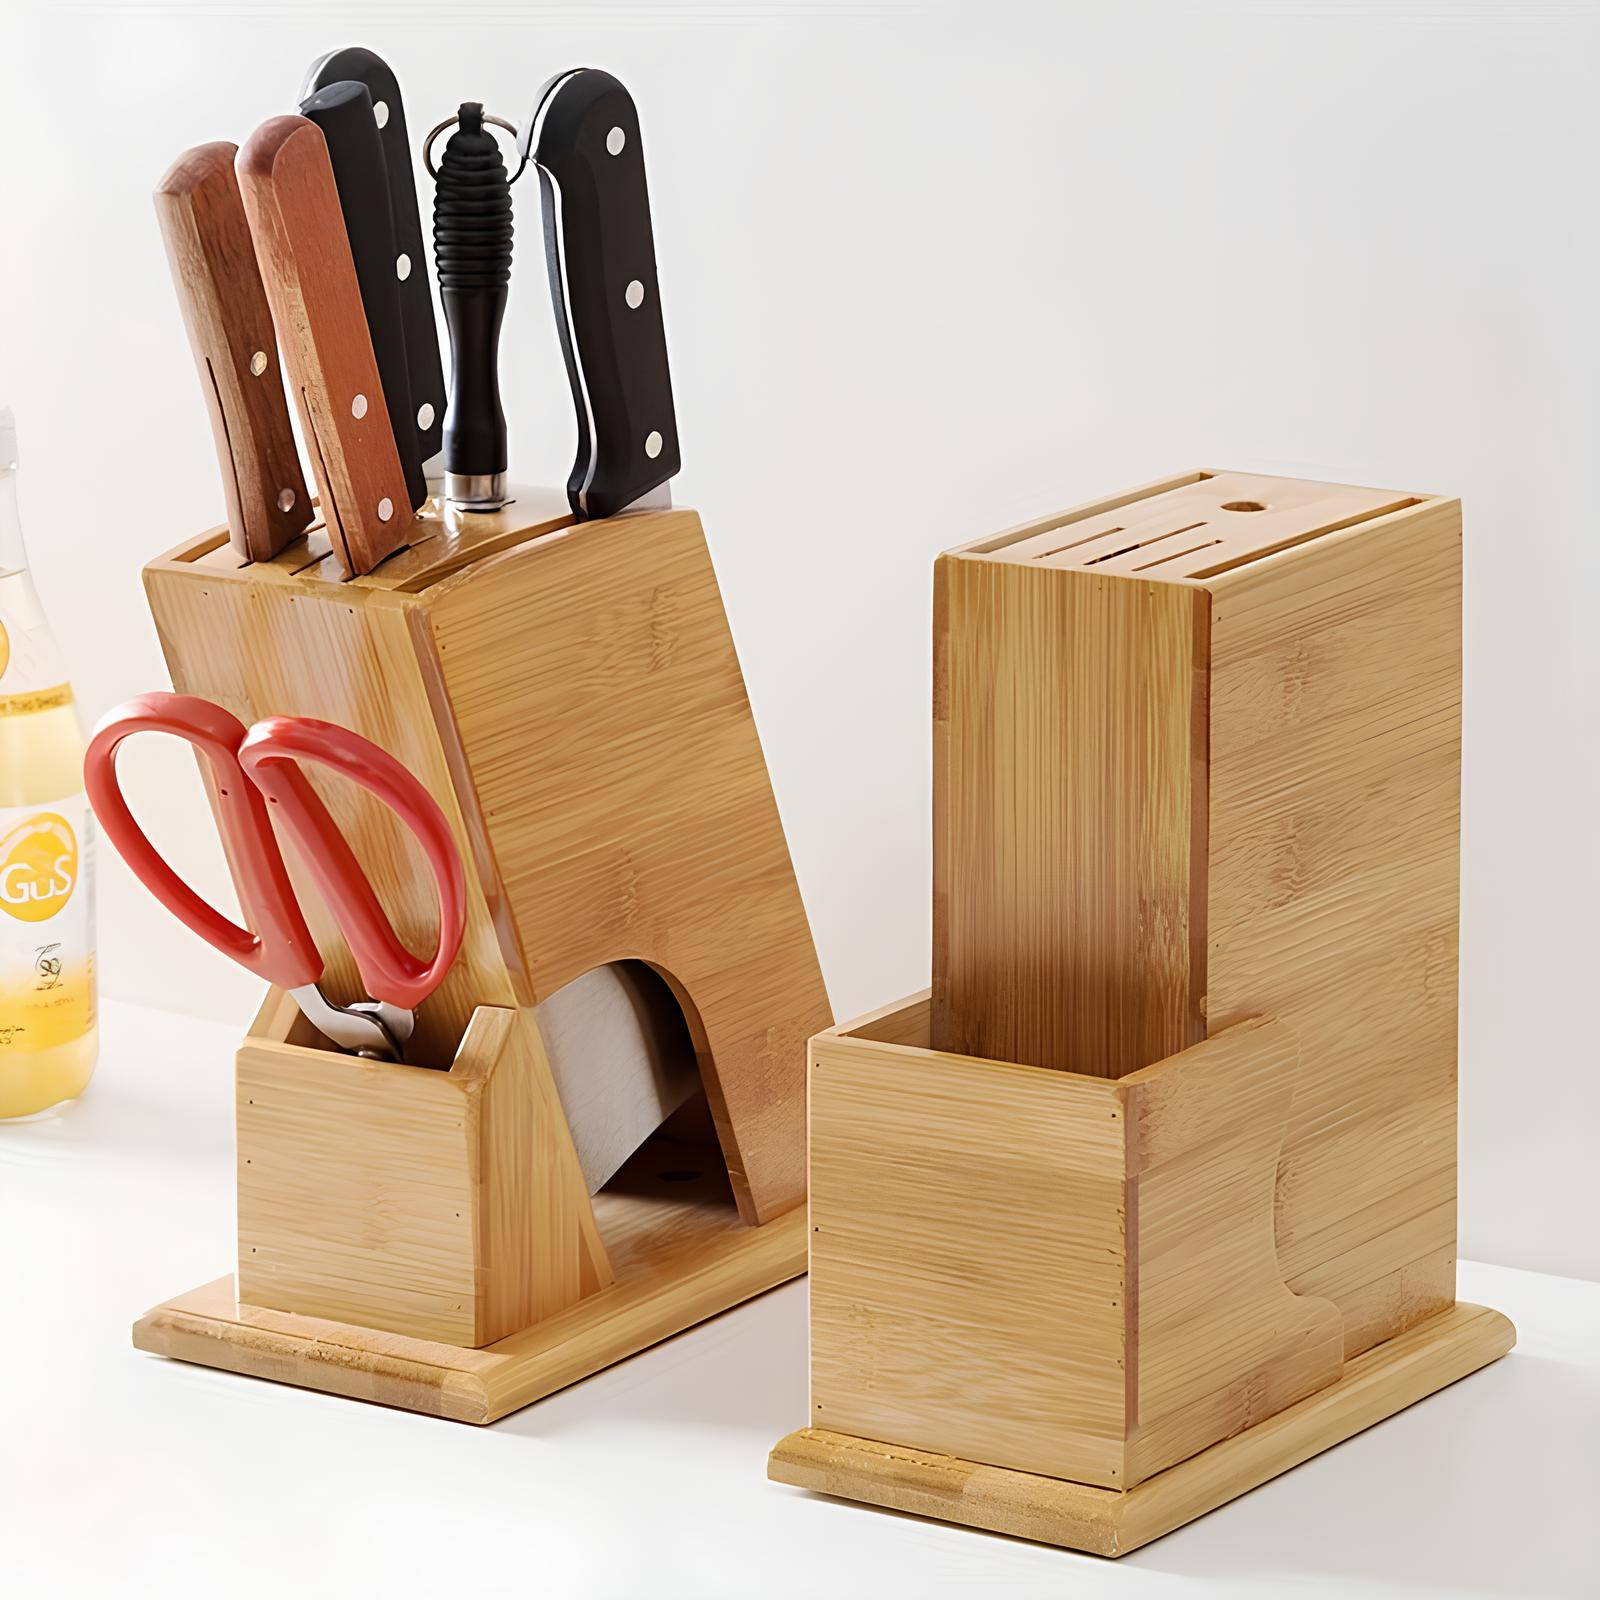 Porte-couteaux de cuisine en bambou - UstensilesCulinaires